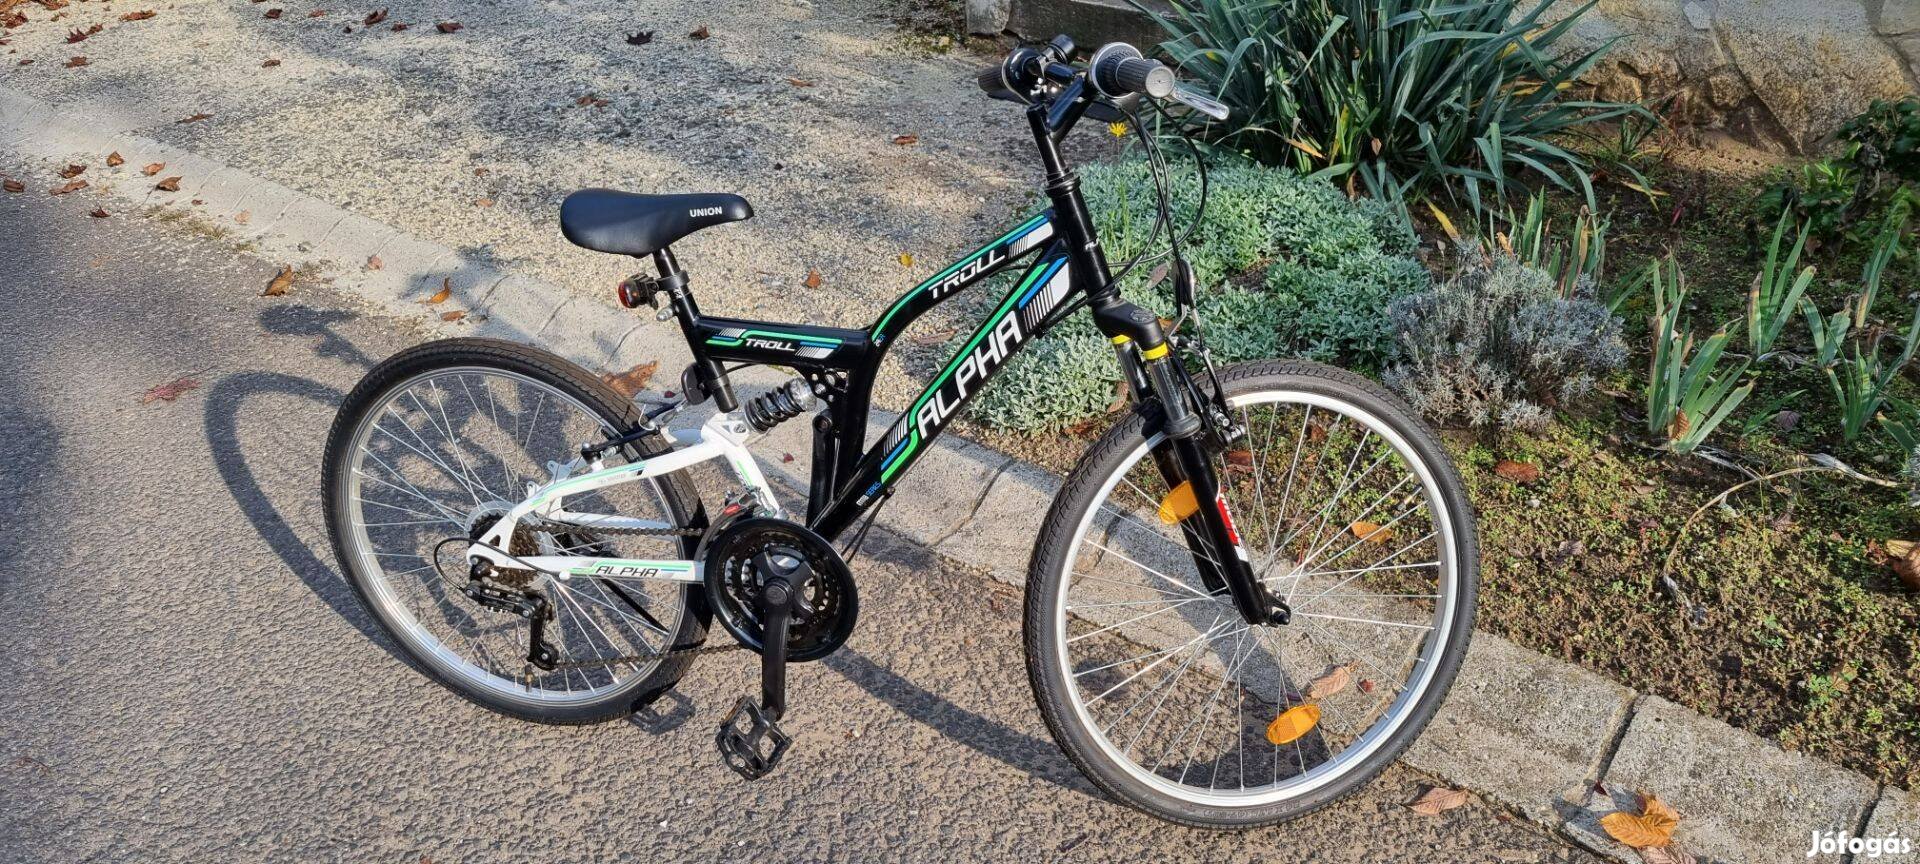 24-es gyermek kerékpár, gyerek bicikli, alig használt, újszerű